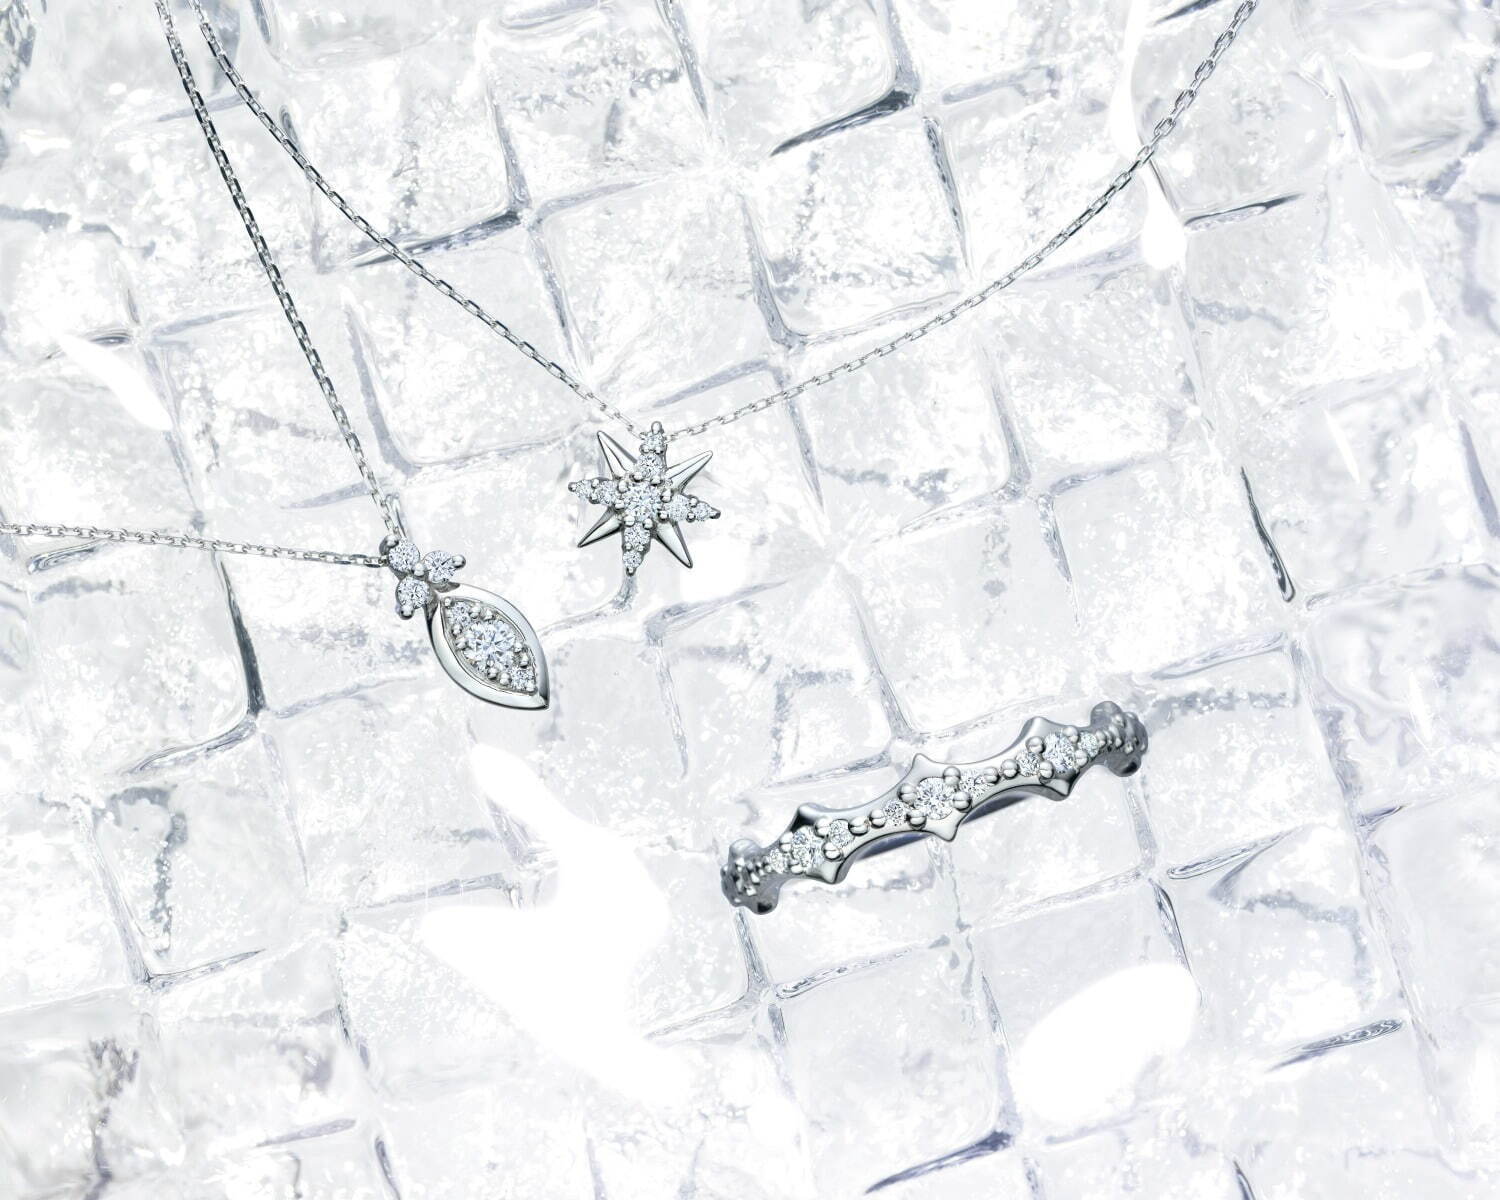 左から) ネックレス 79,200円(プラチナ ×ダイヤモンド)
ネックレス 55,000円(プラチナ ×ダイヤモンド)
リング 79,200円(プラチナ ×ダイヤモンド)